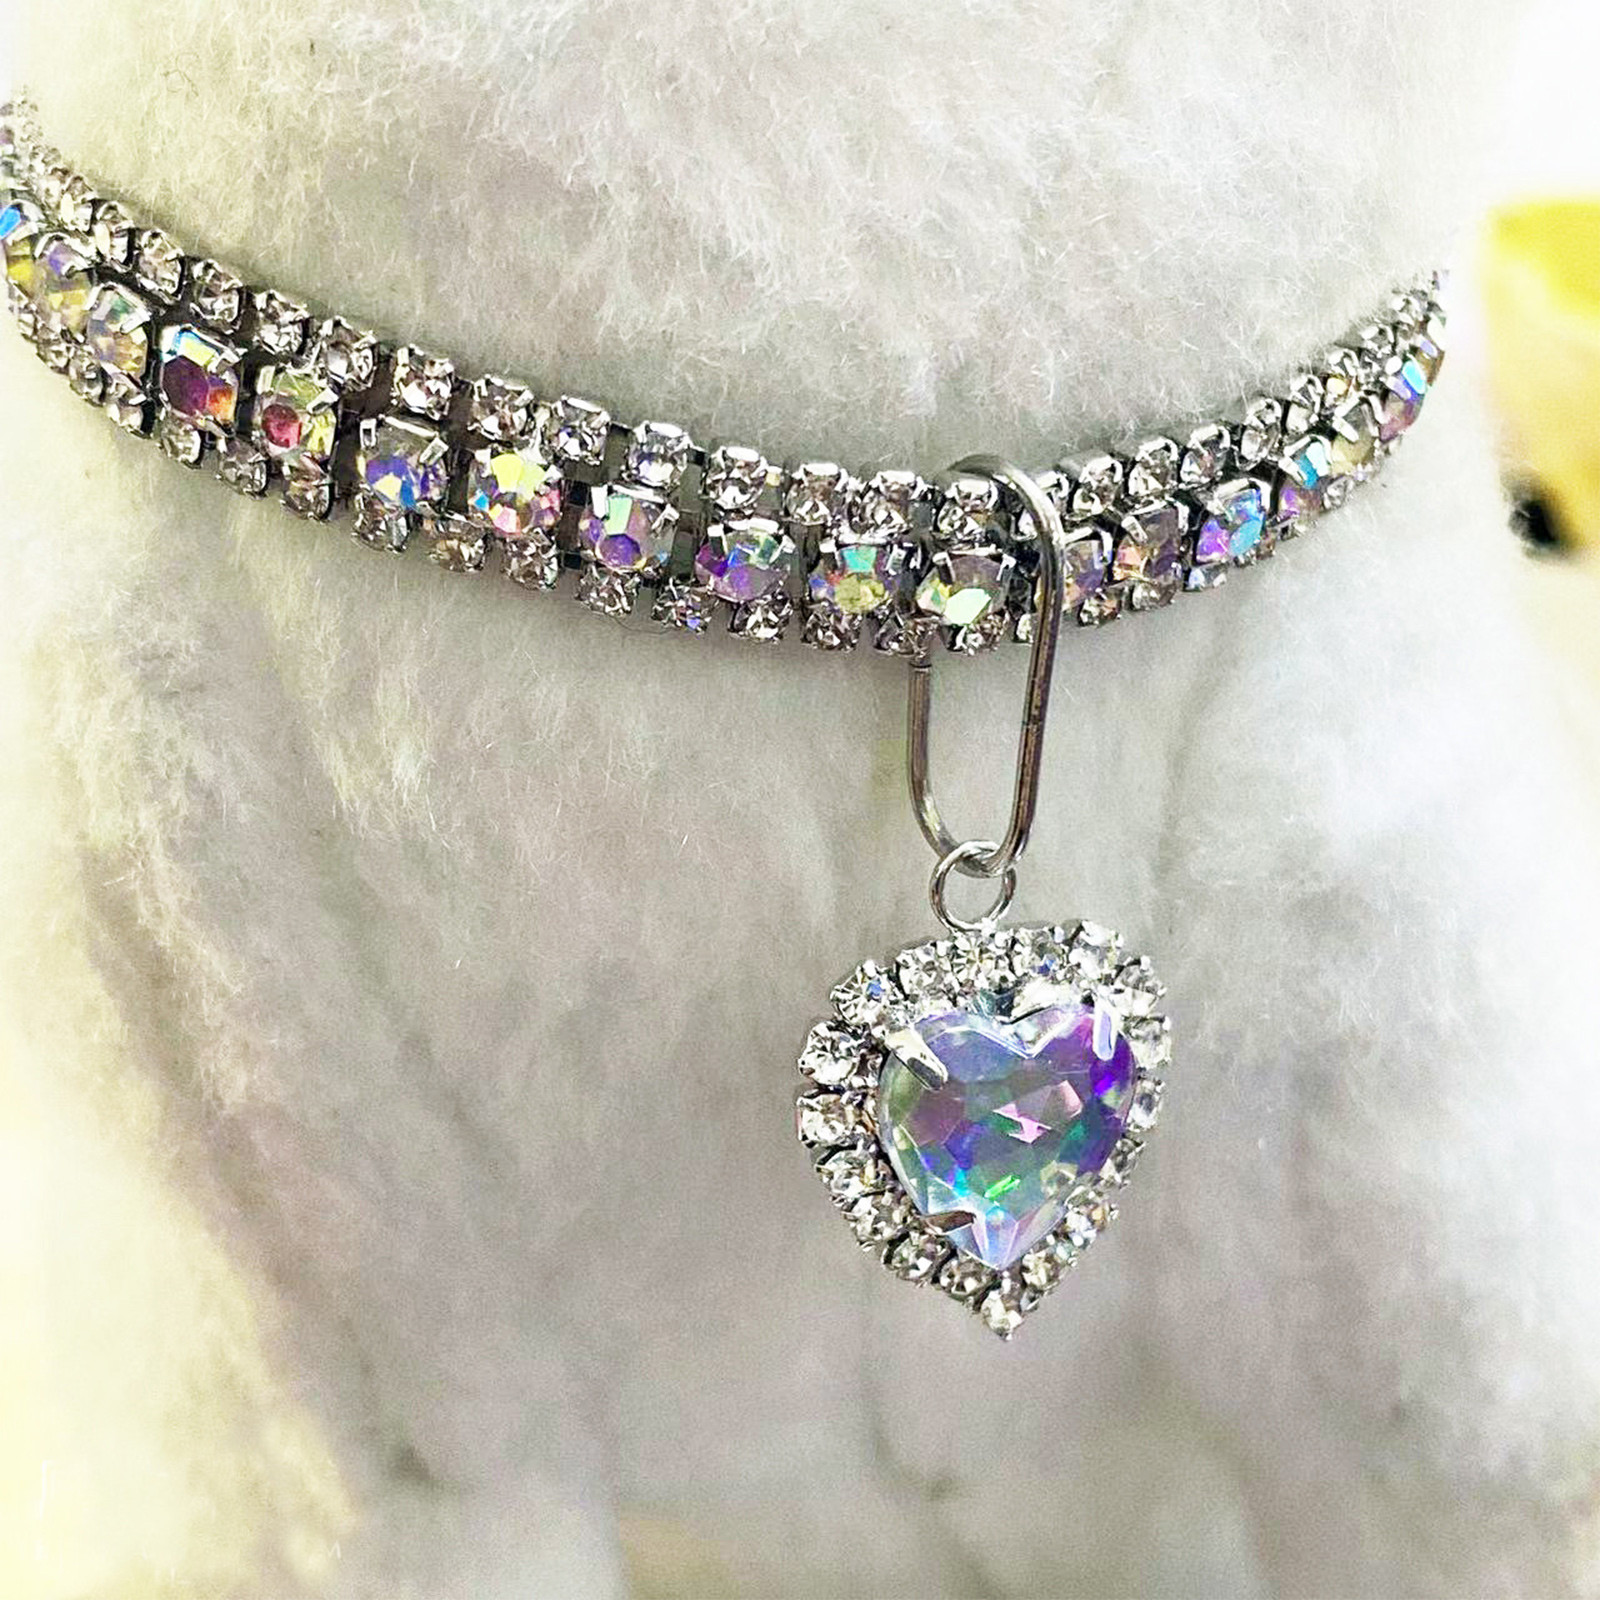 BallsFHK Love Water Drop Rhinestone Cat Necklace Pet Dog Necklace Jewelry Necklace Cat Necklace - image 4 of 4